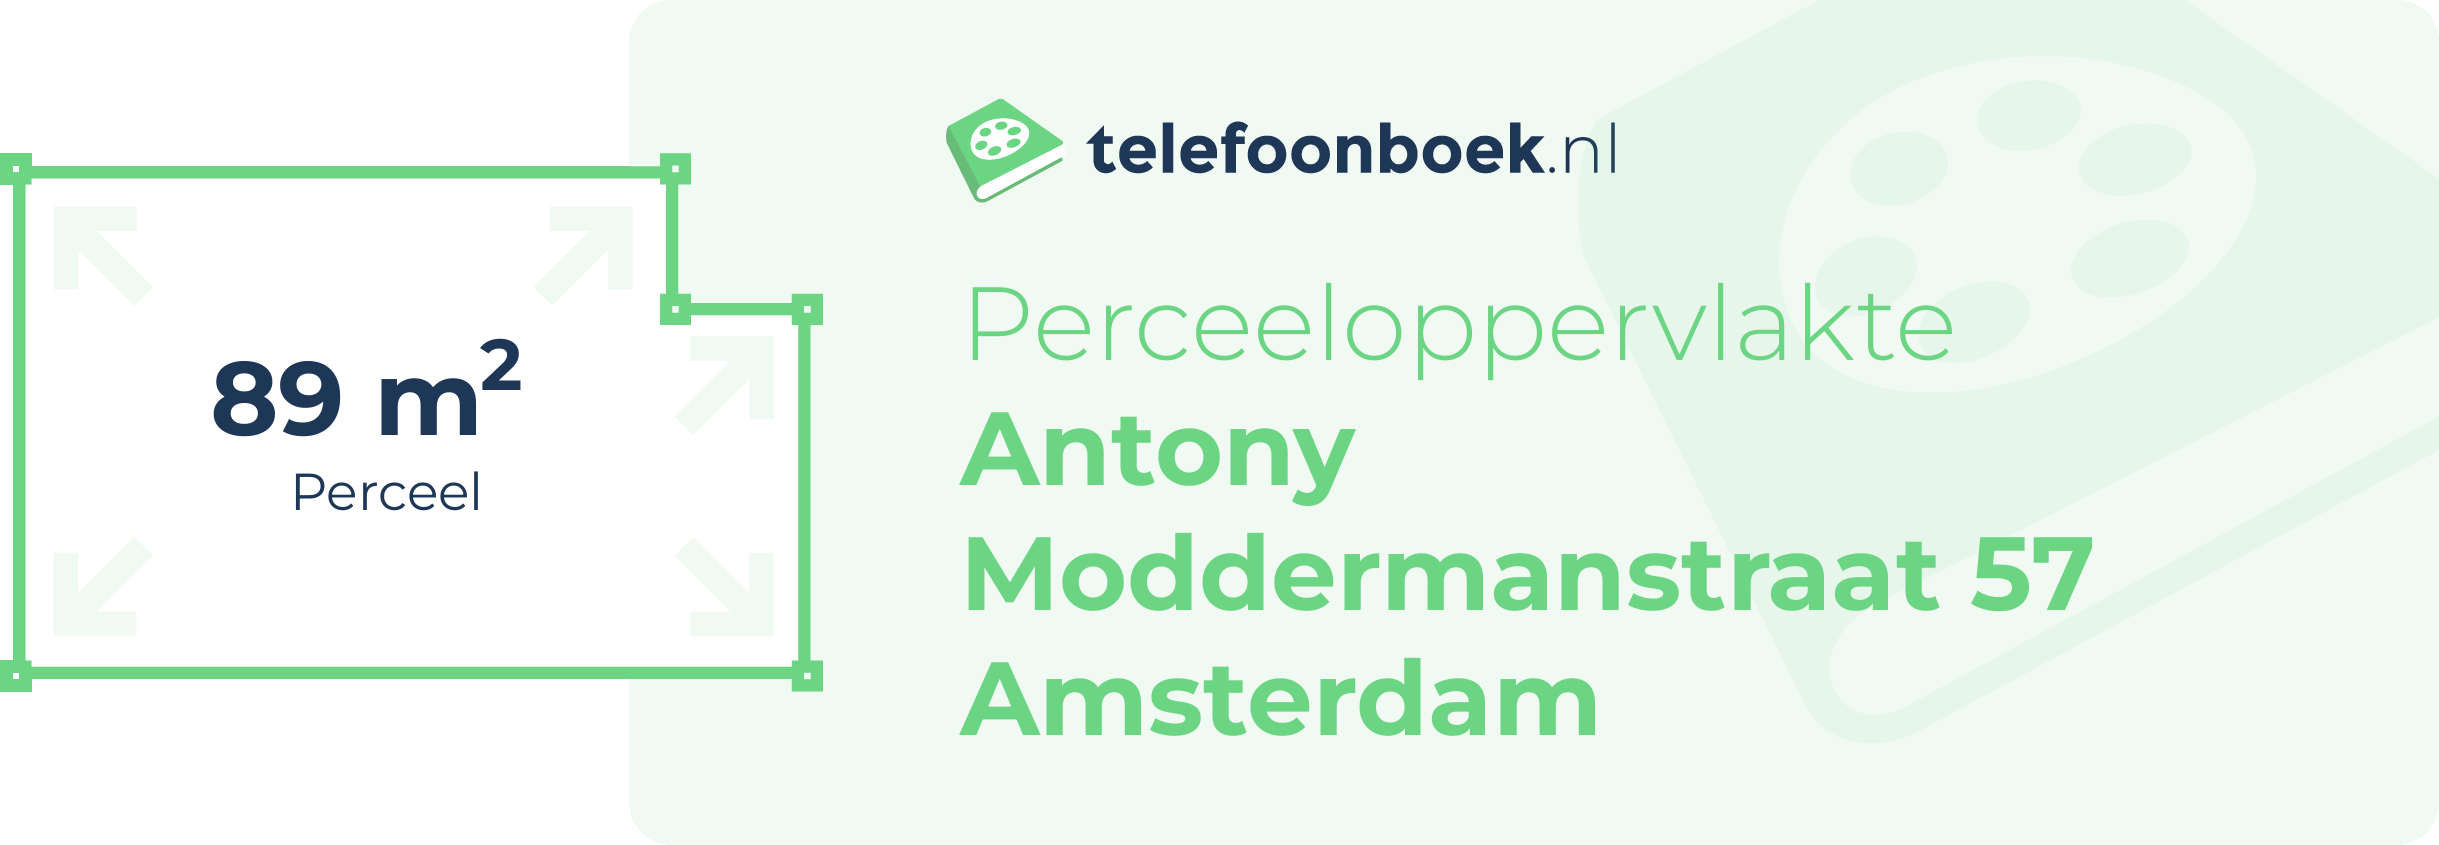 Perceeloppervlakte Antony Moddermanstraat 57 Amsterdam